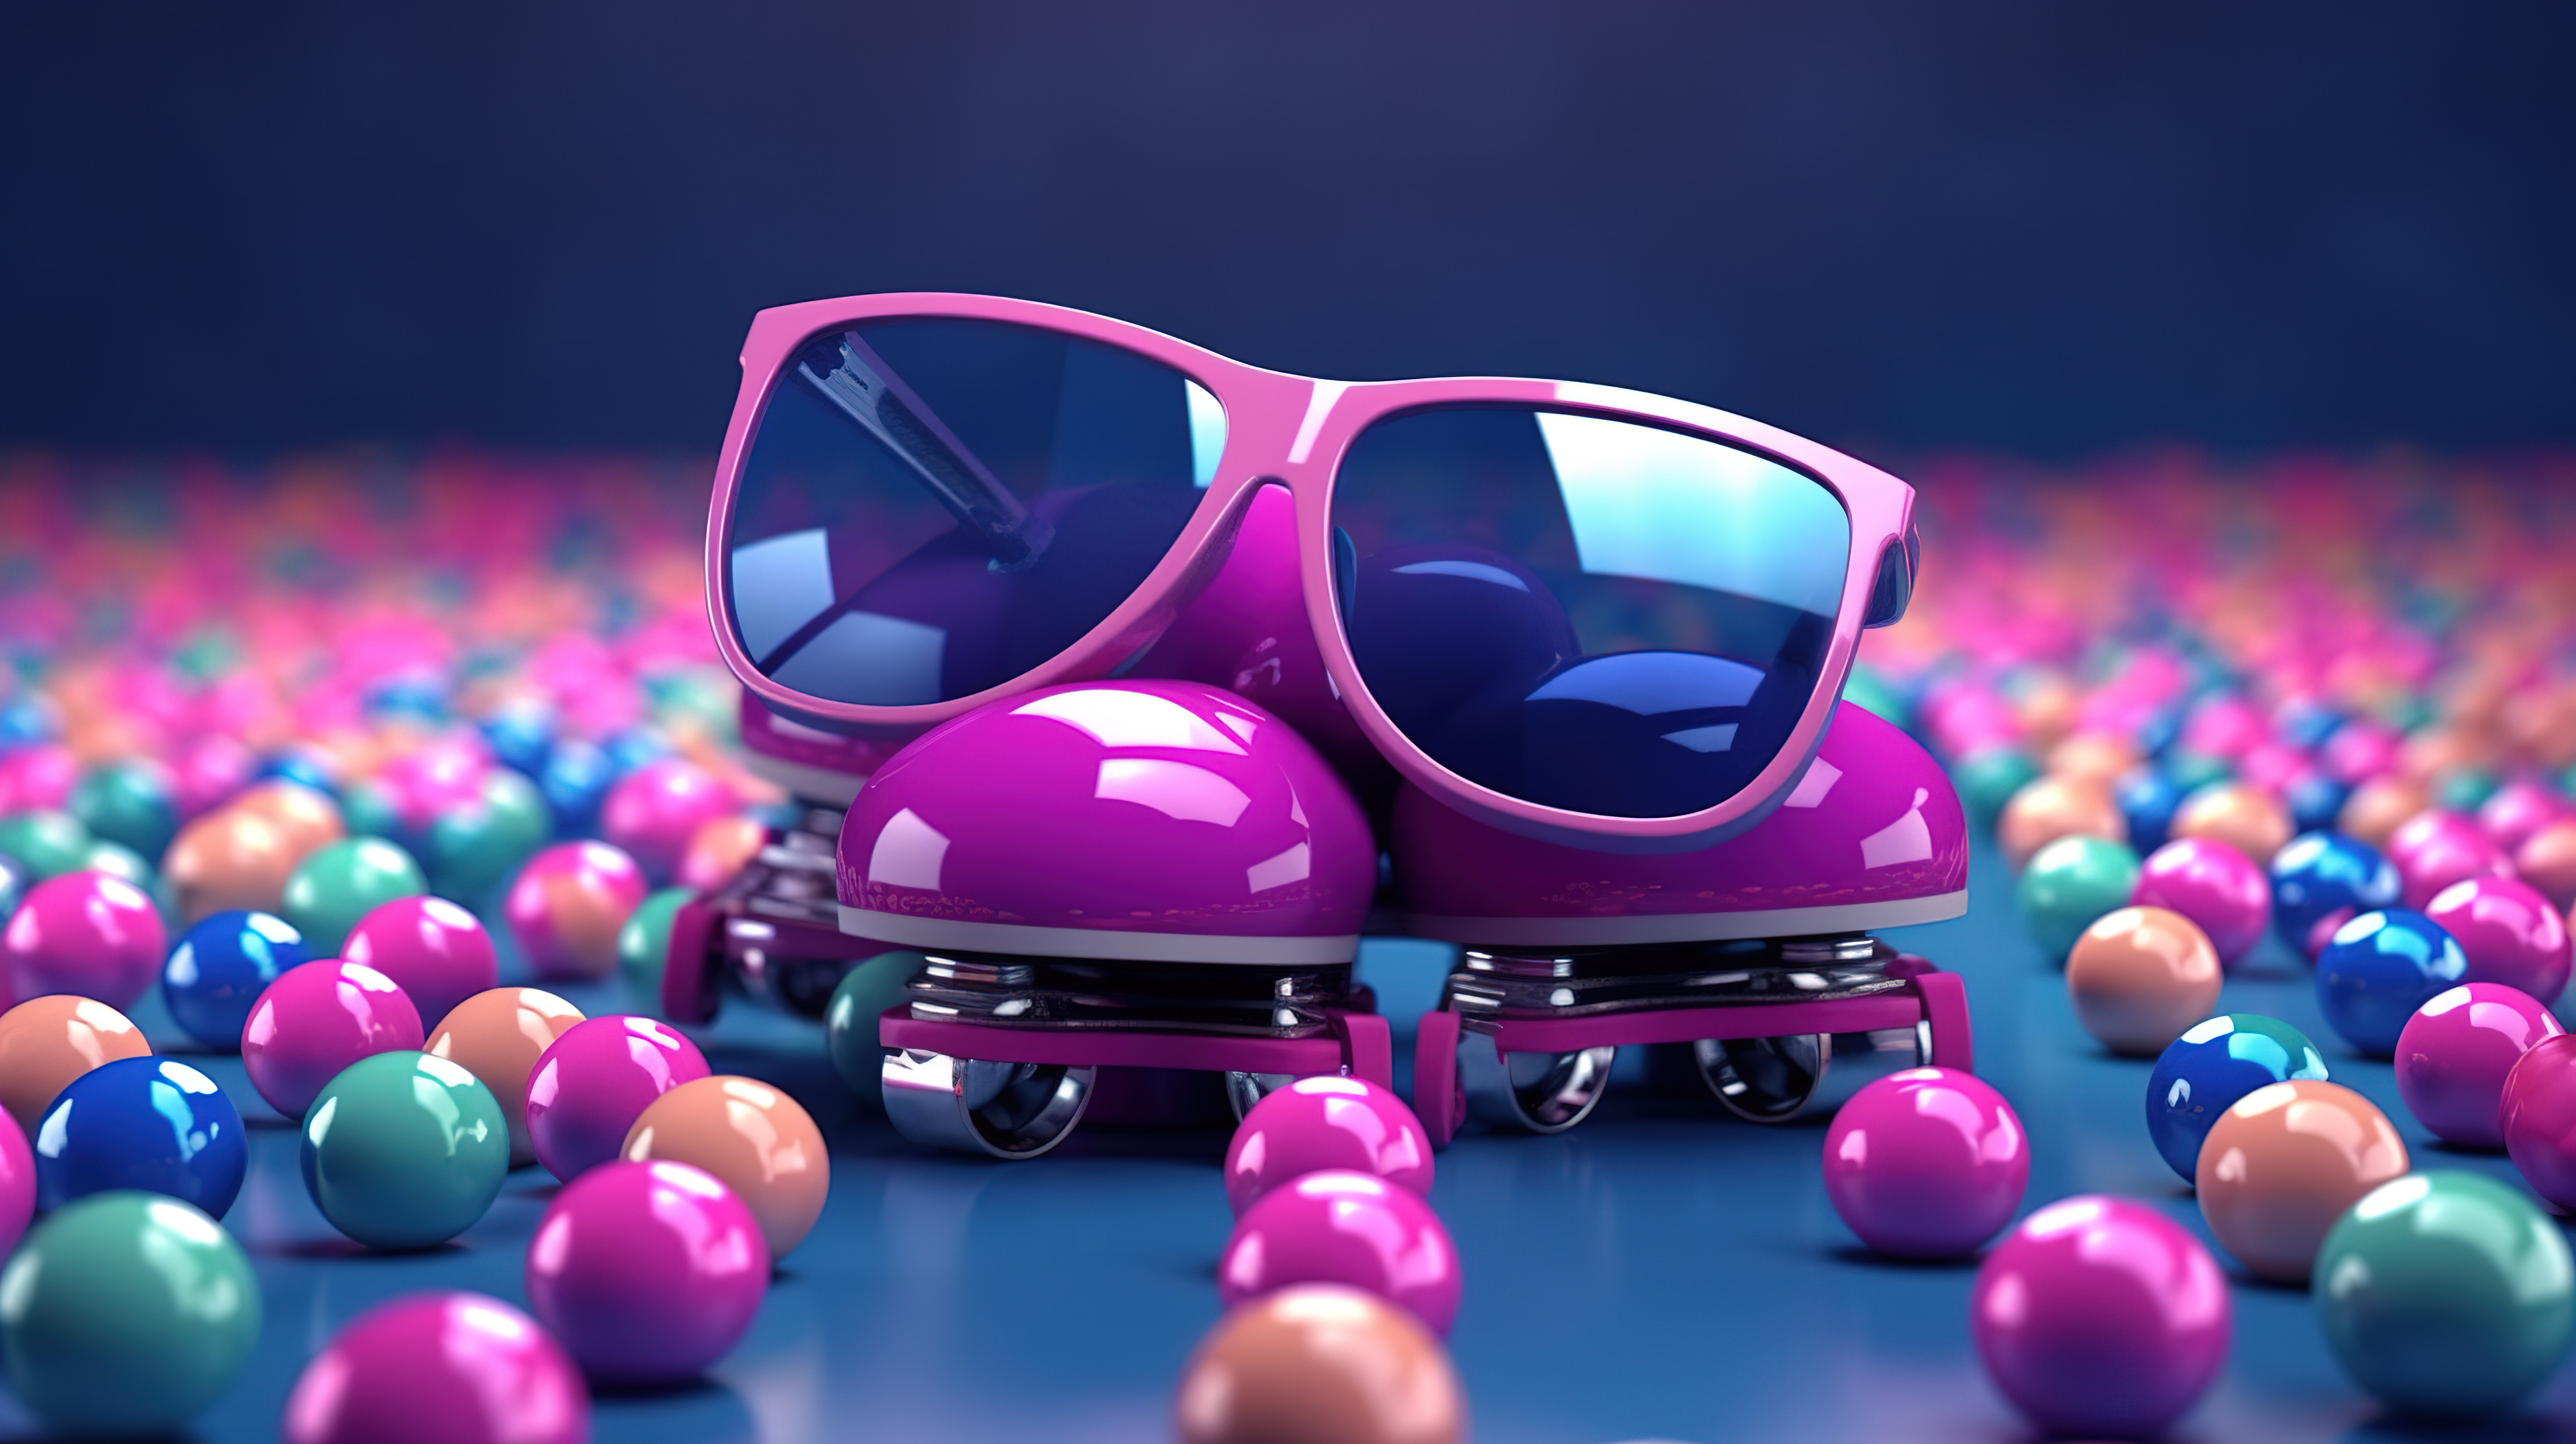 深蓝色背景上蓝色溜冰鞋和粉色眼镜周围彩色球的 3D 渲染图片